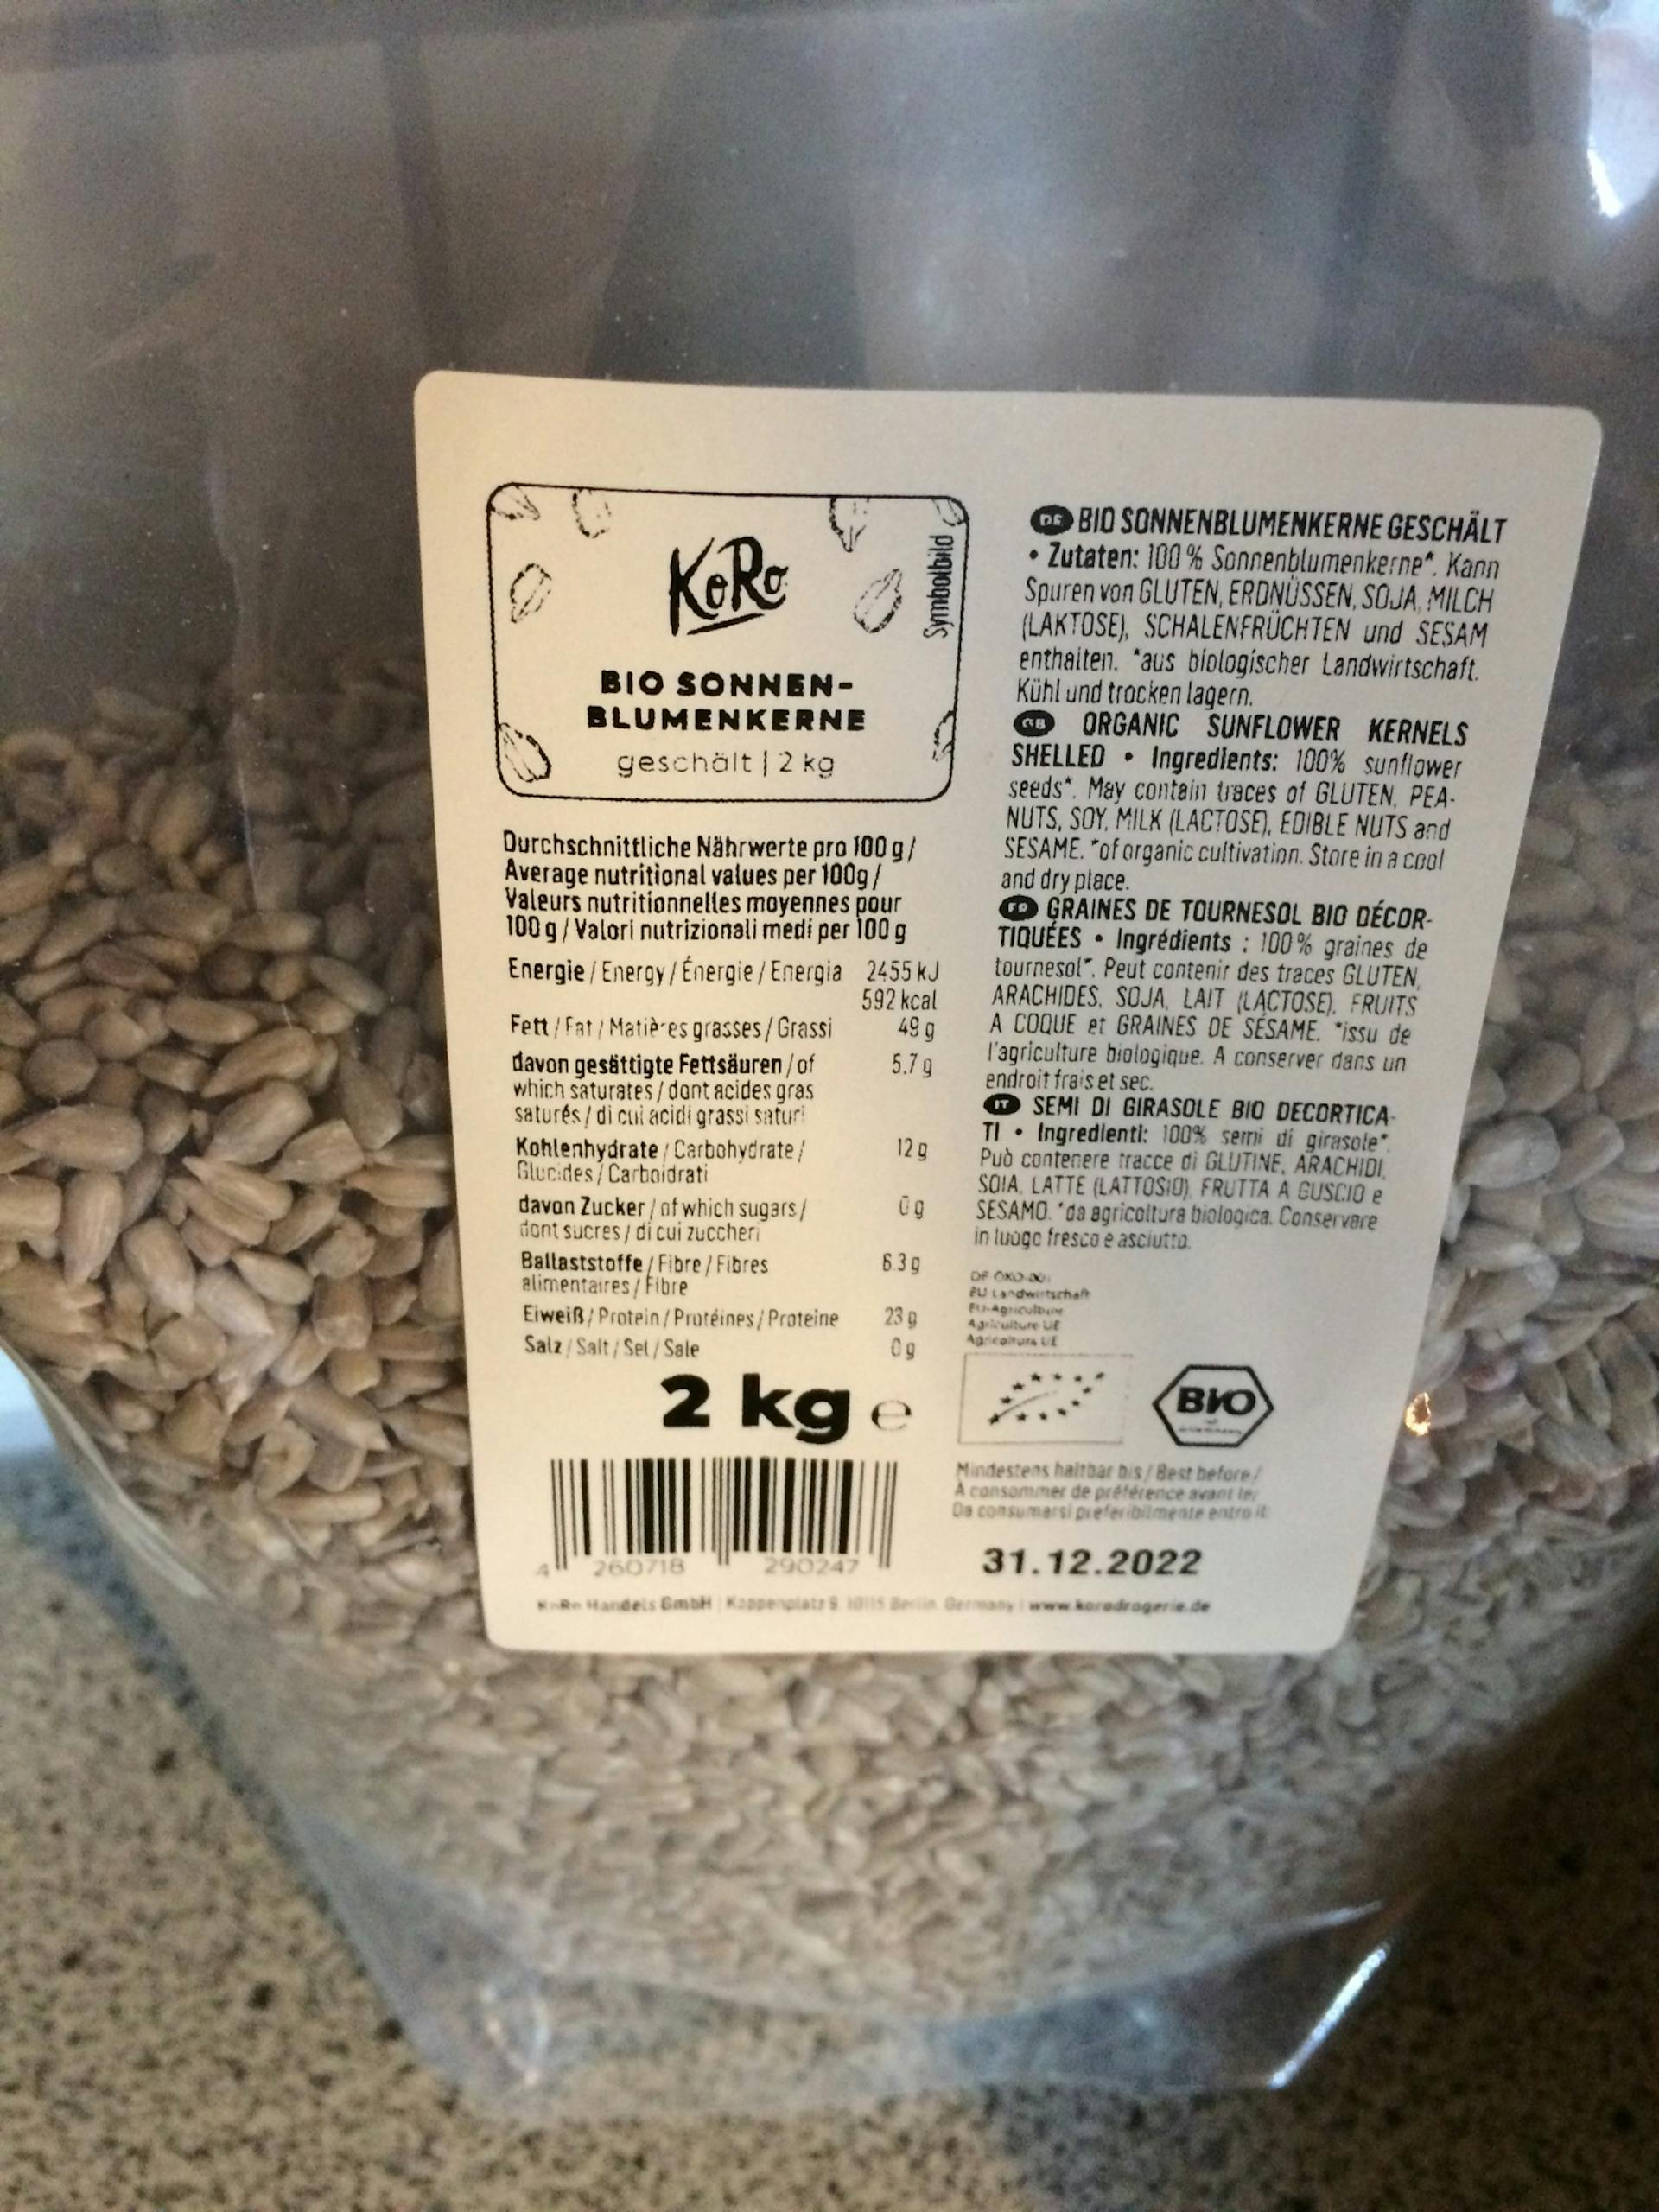 25 kg de graines de tournesol décortiquées, nourriture dispersée